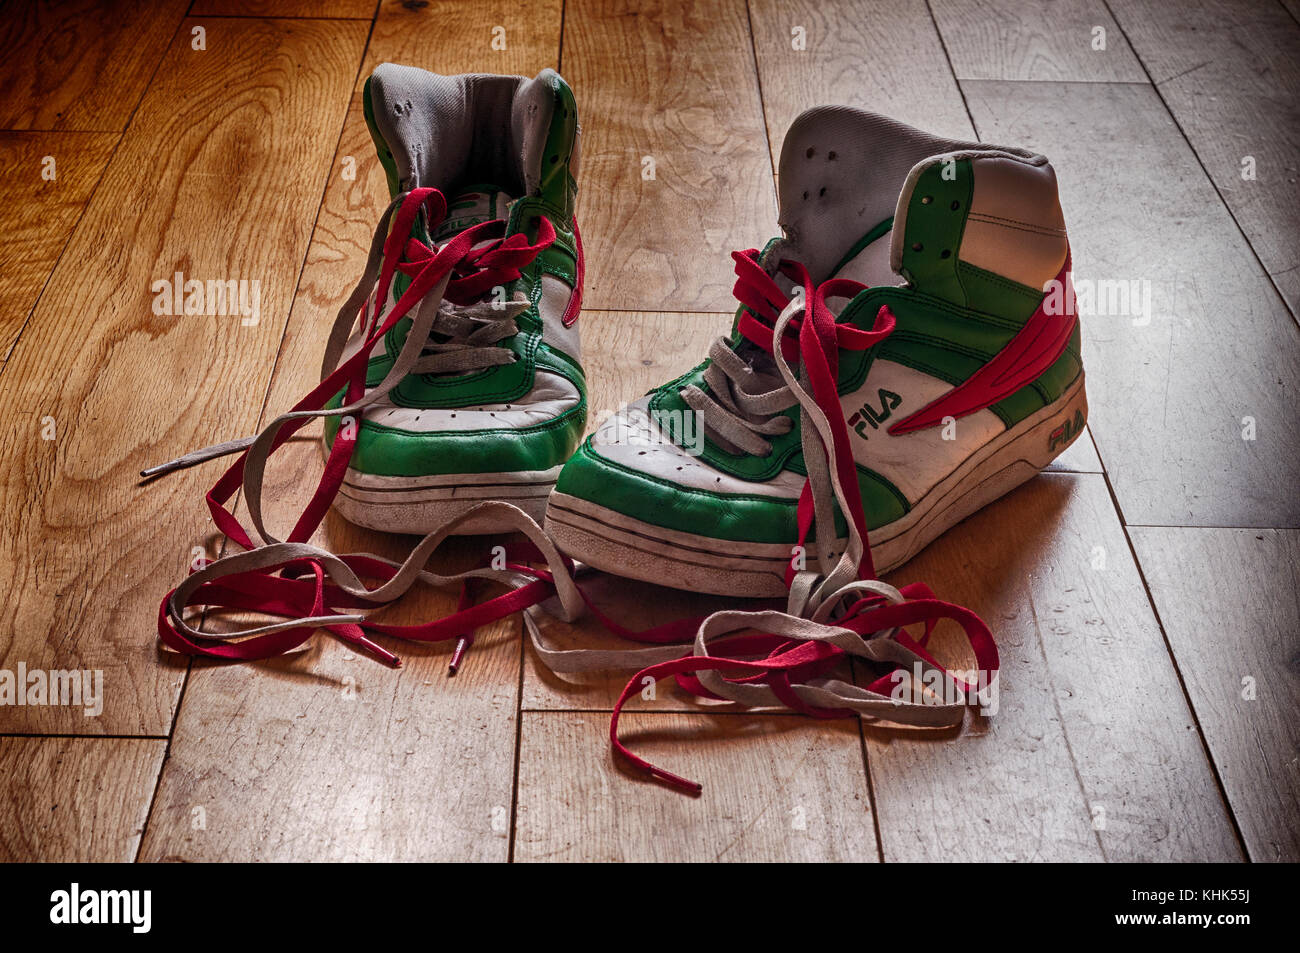 Chaussures Fila (baskets) bien portées et qui commencent à montrer leur âge avec des lacets de couleur. Il était assis sur un parquet. Banque D'Images